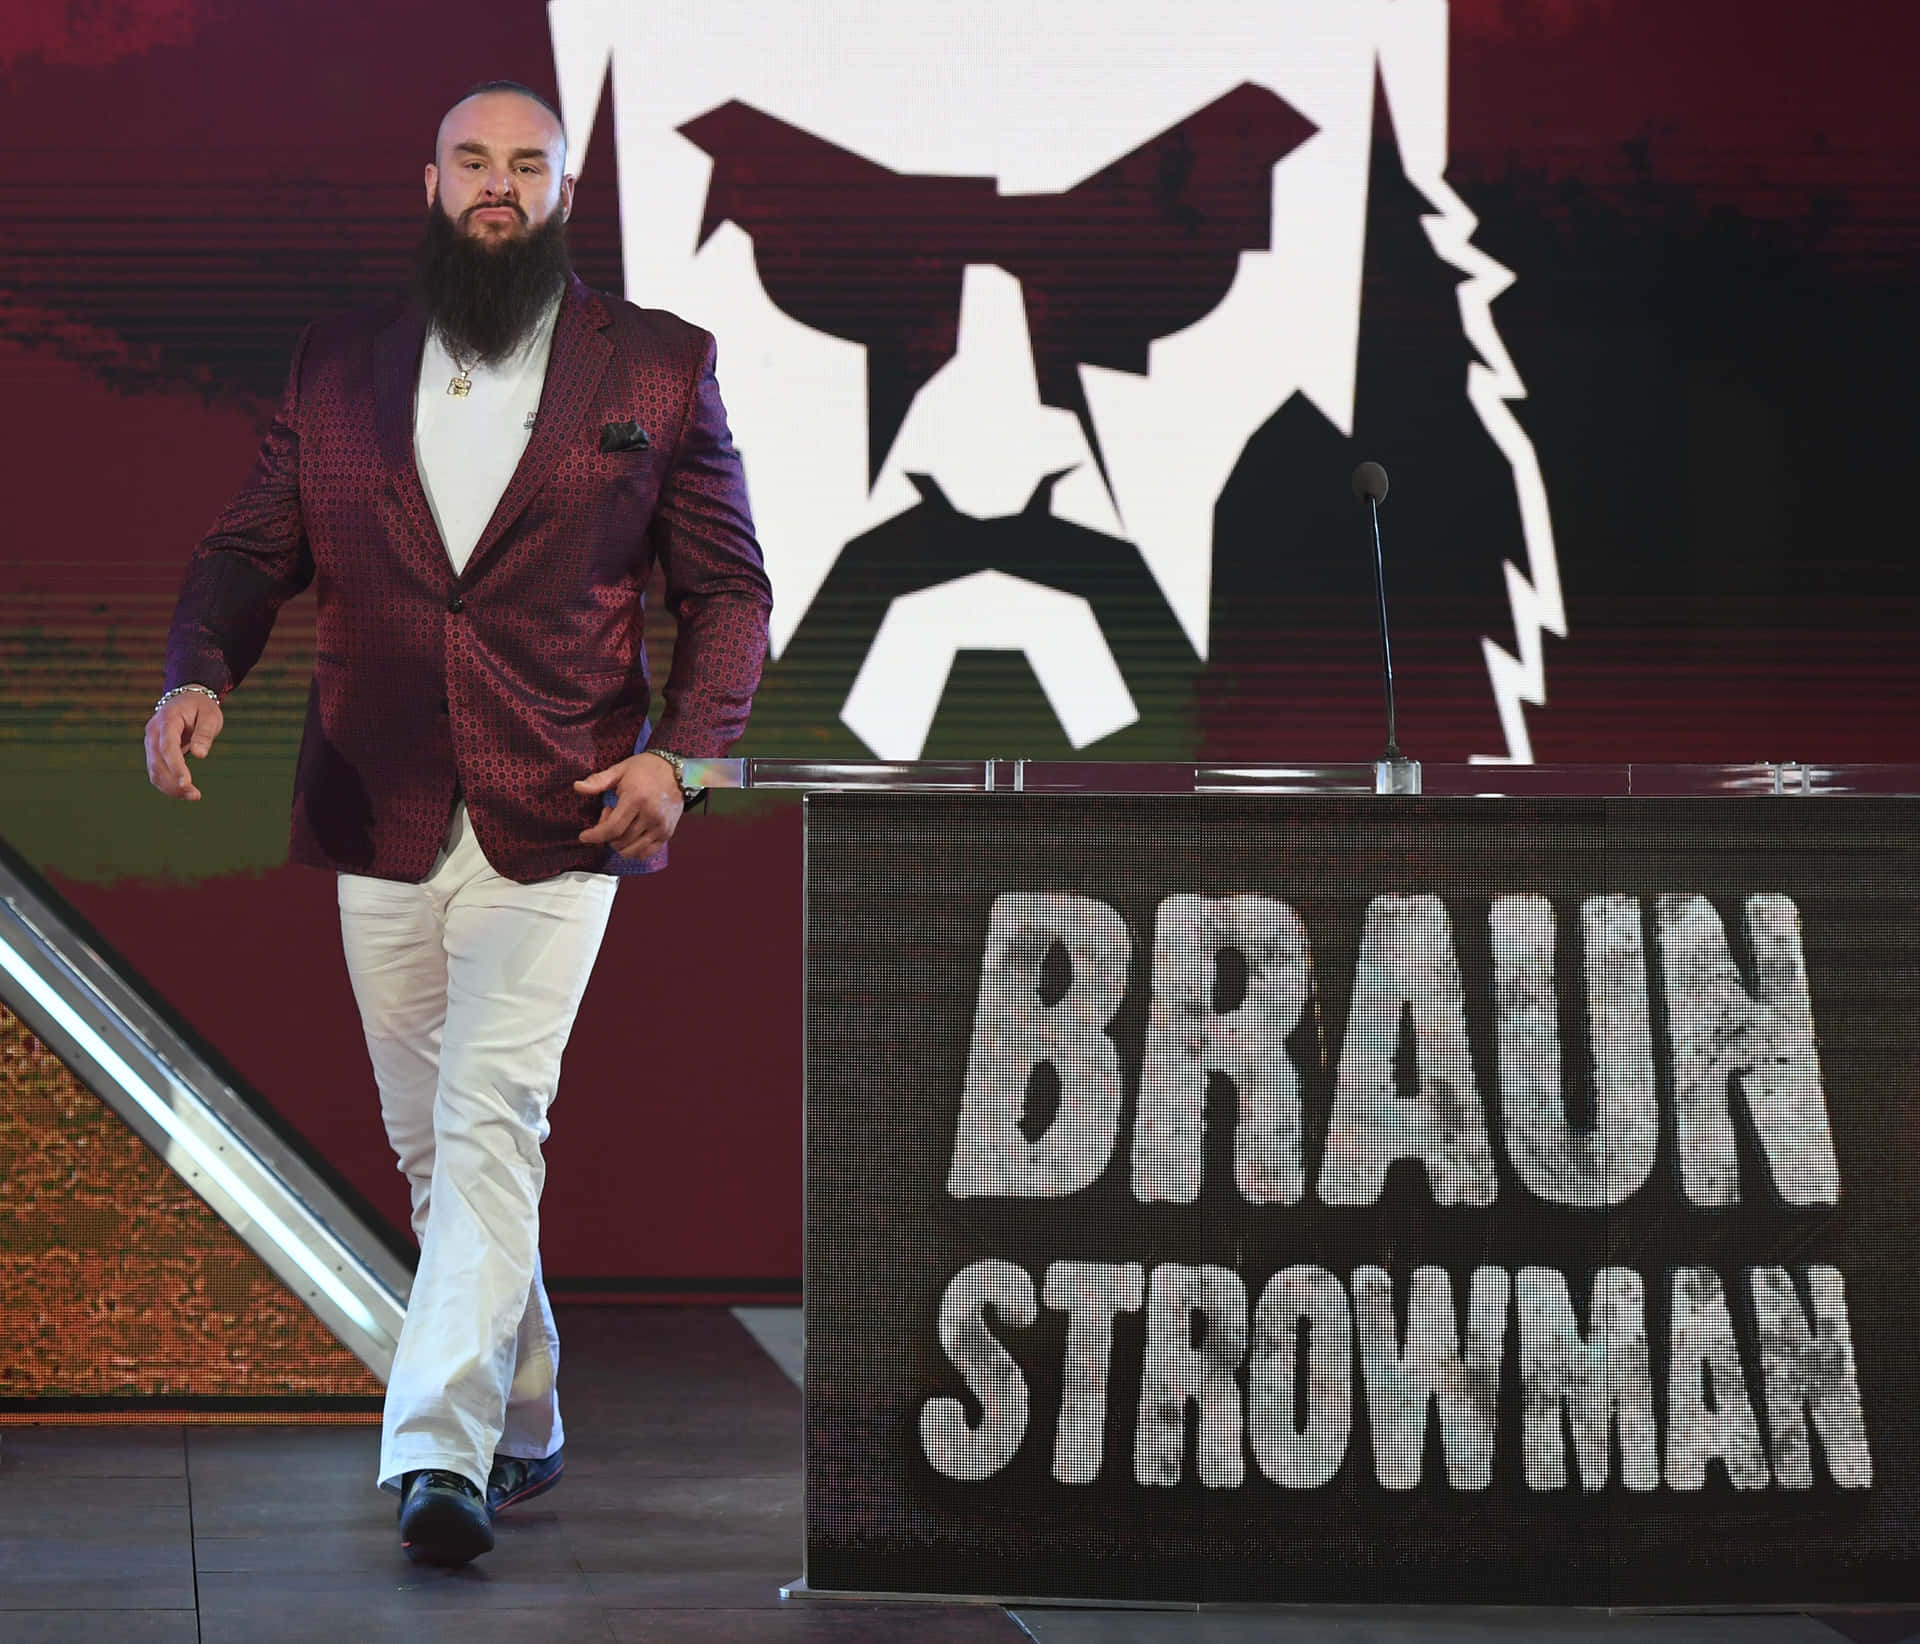 Wwe American Wrestler Braun Strowman At T-mobile Arena Wallpaper